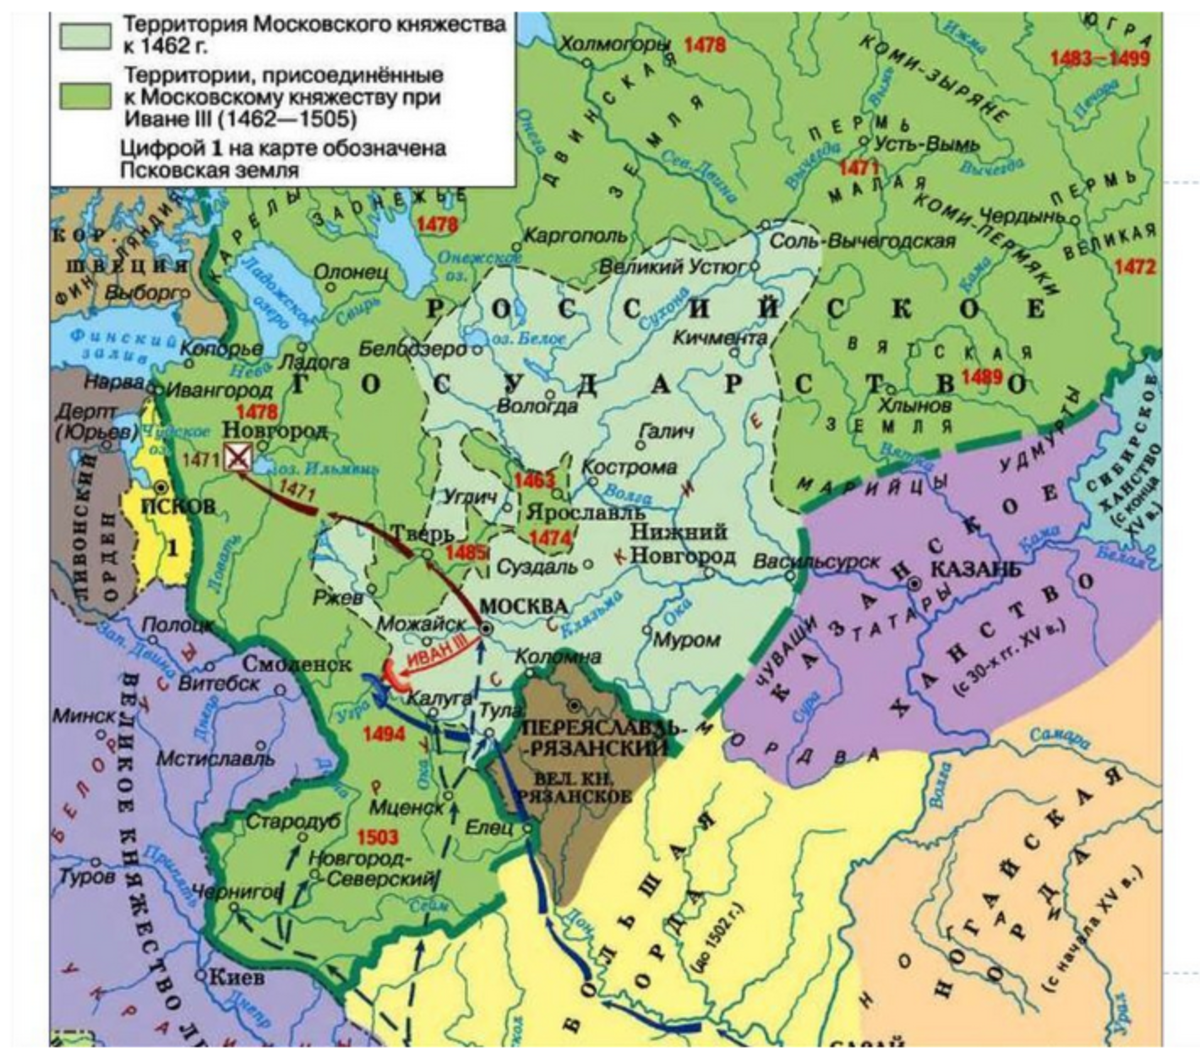 Карта московского княжества в 15 веке. Территория Московского княжества в 1462 году. Московское княжество 15 век карта.